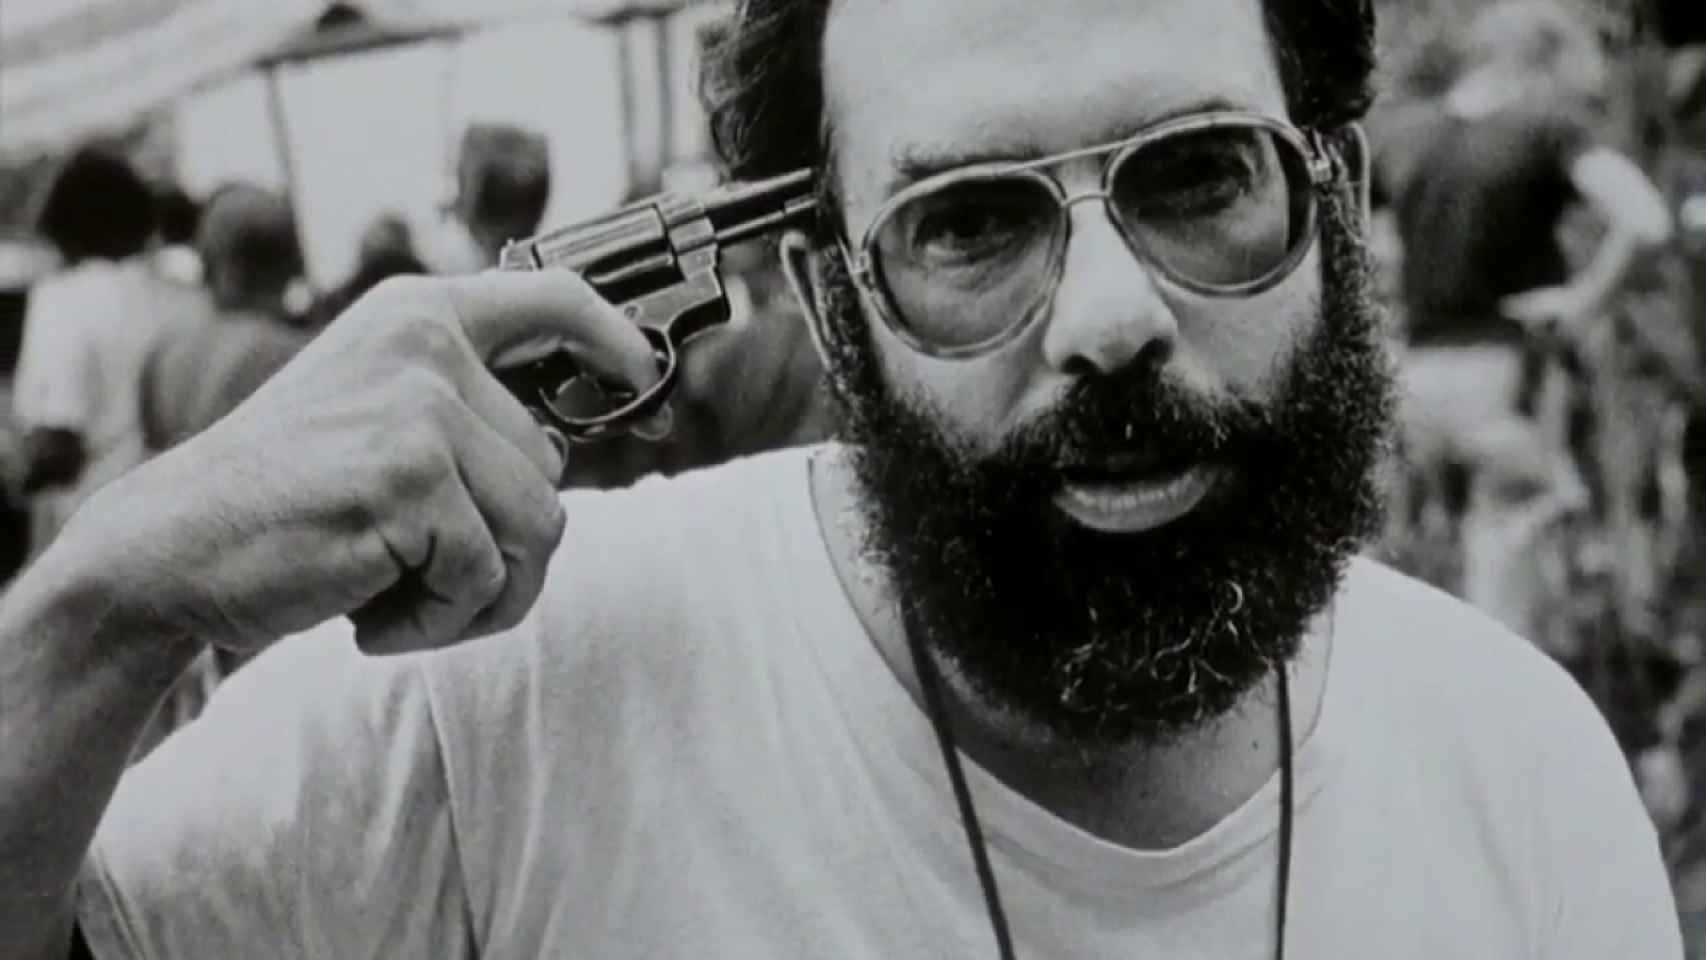 Francis Ford Coppola durante la producción de Apocalypse Now.